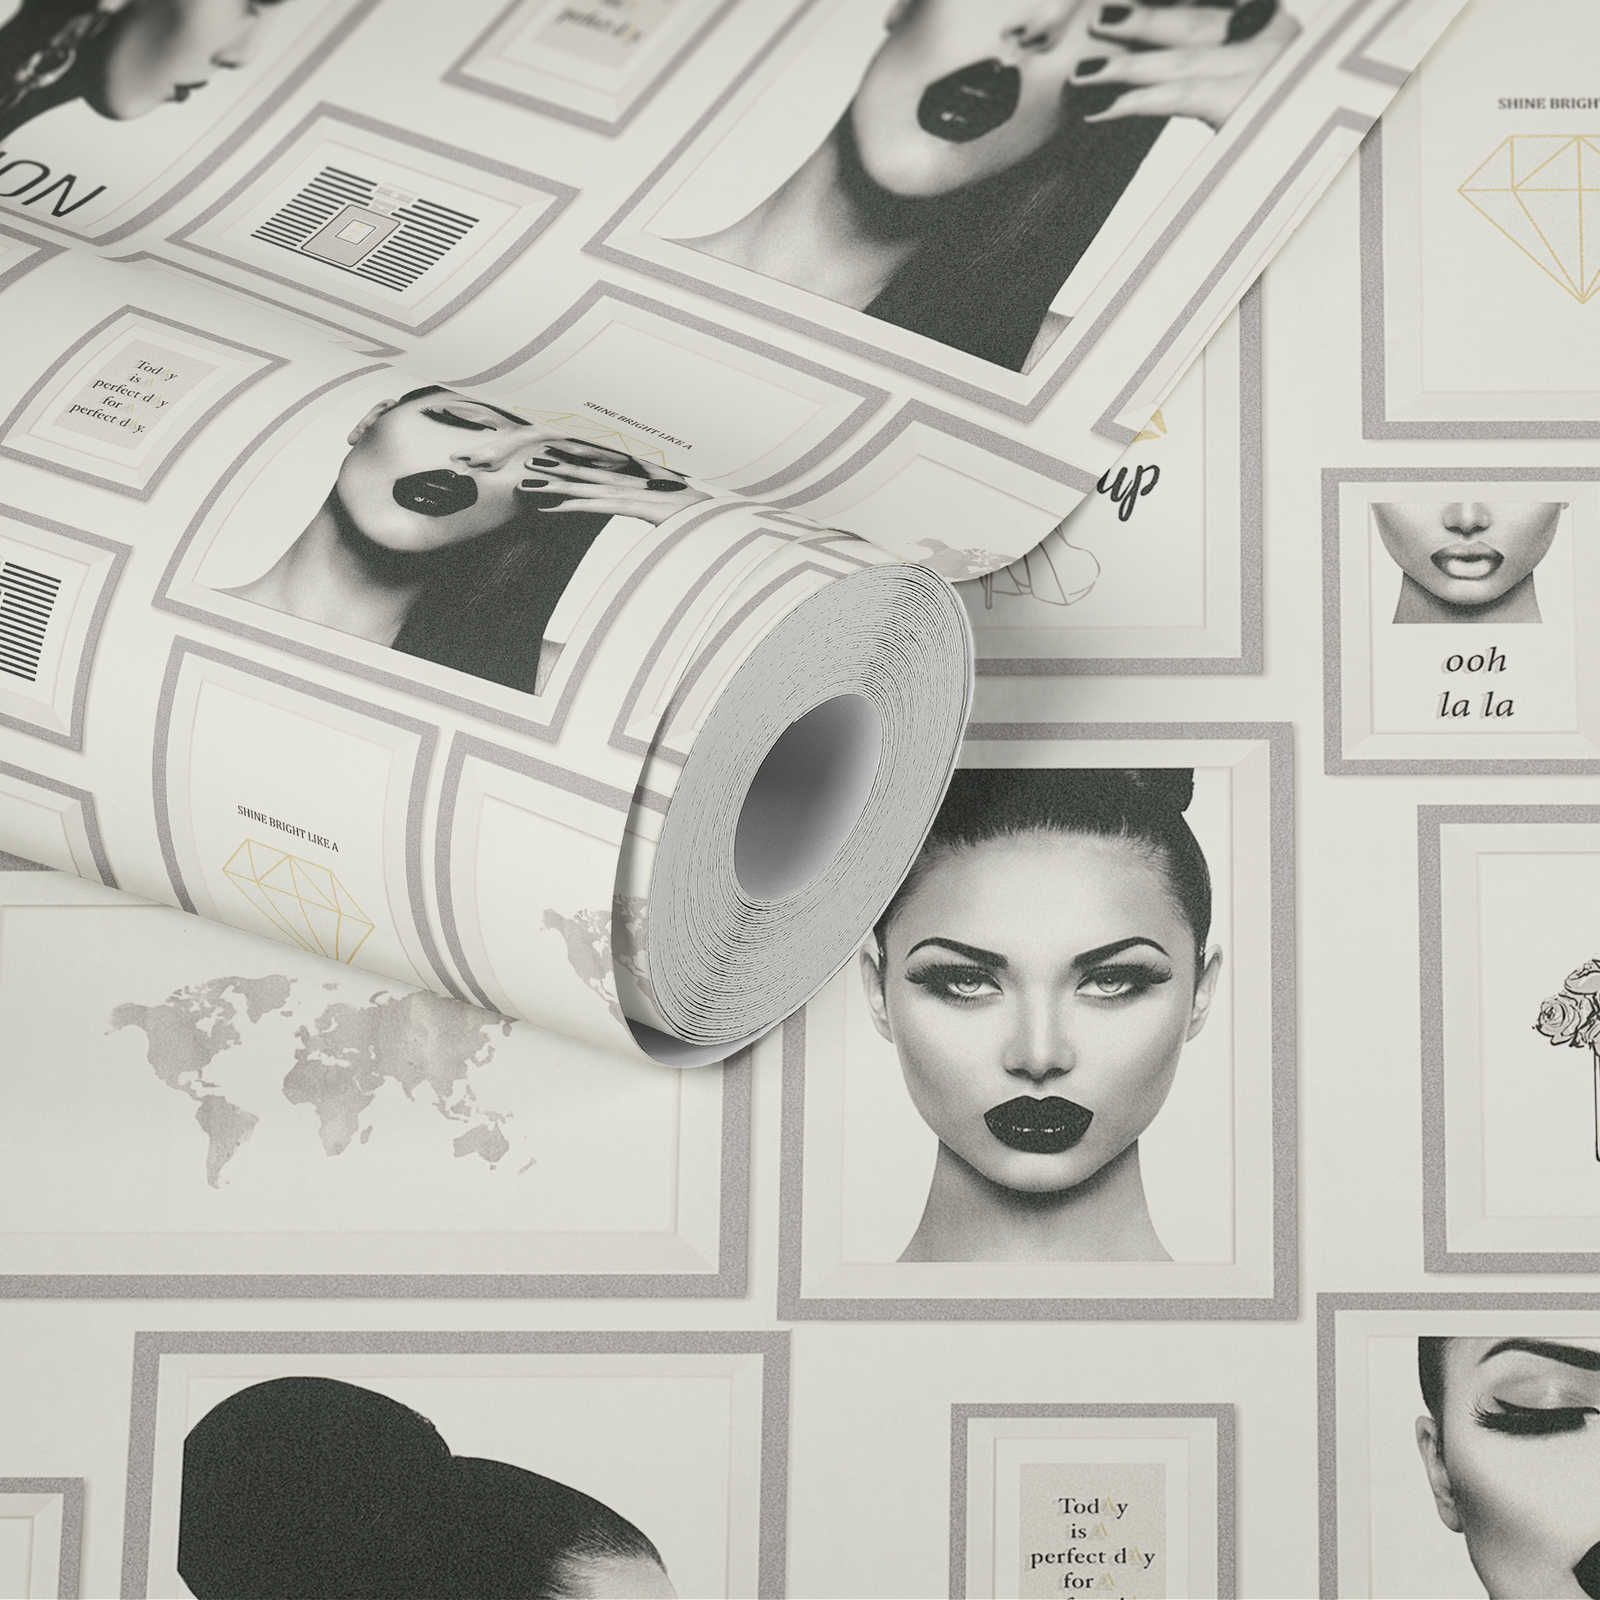             Carta da parati Fashion Design con decorazioni murali - argento, nero, bianco
        